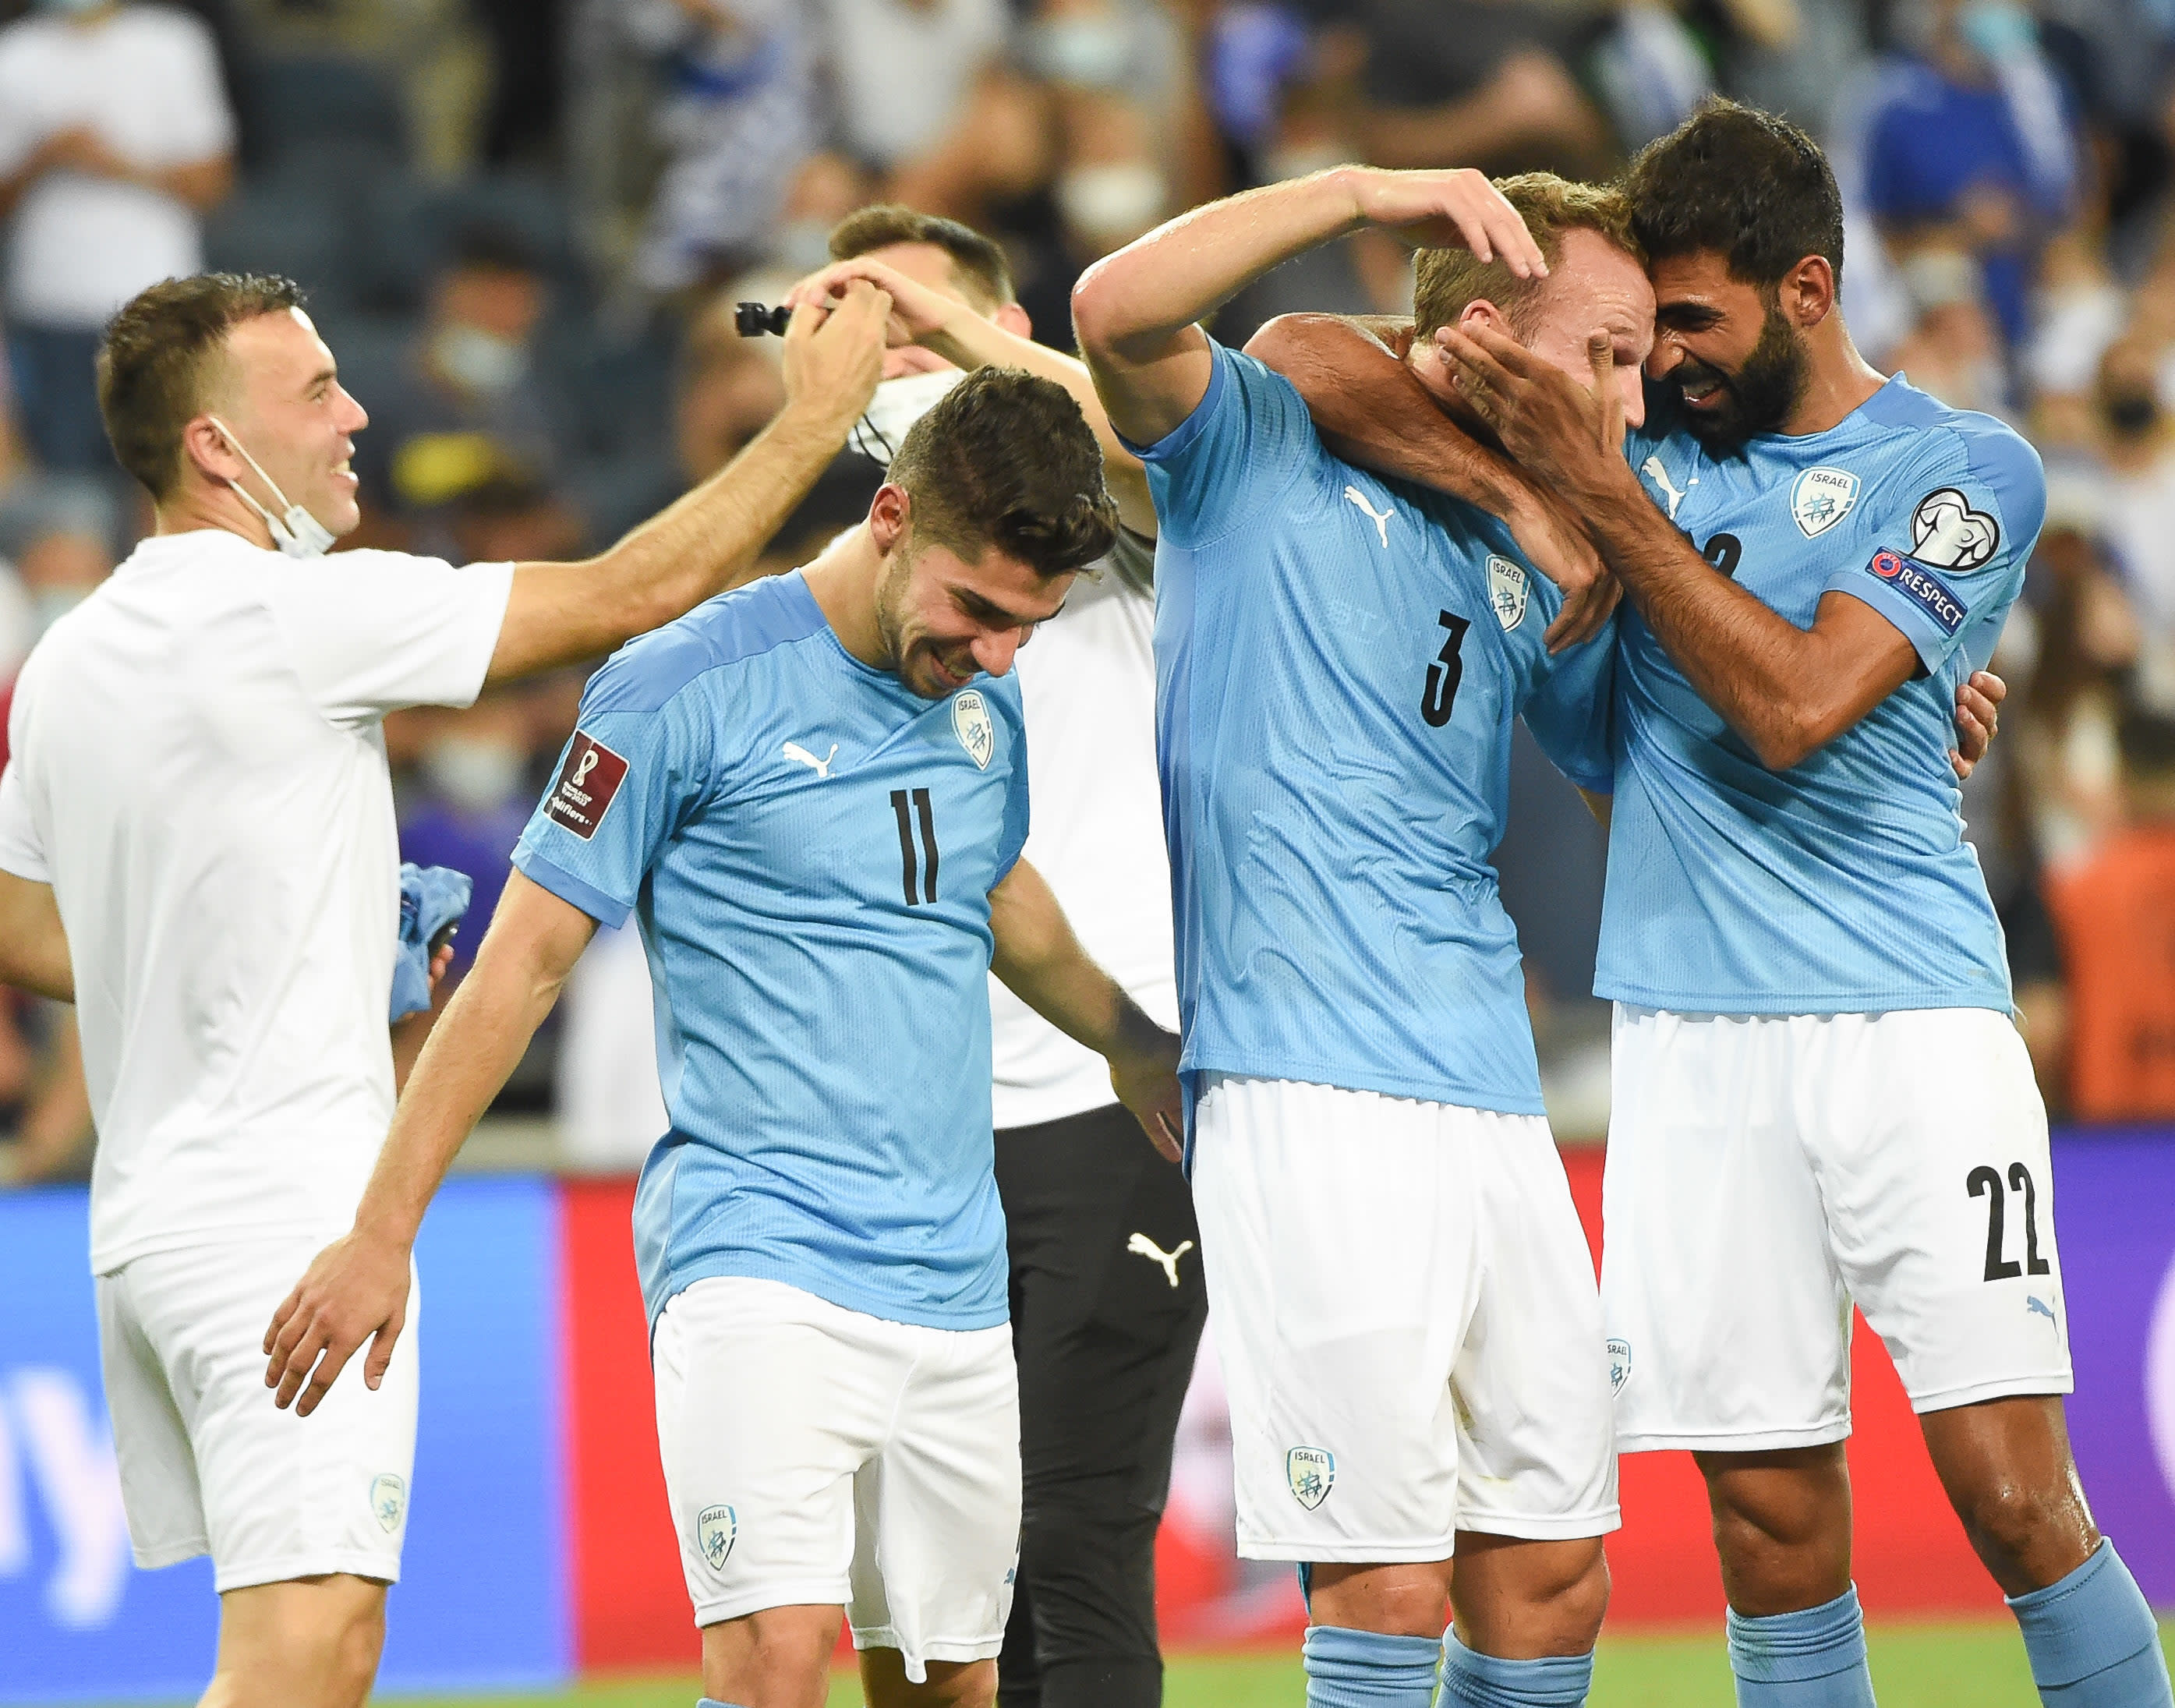 דן גלזר, אופיר דוידזאדה, מנור סולומון, נבחרת ישראל בכדורגל, חוגגים את הניצחון על אוסטריה